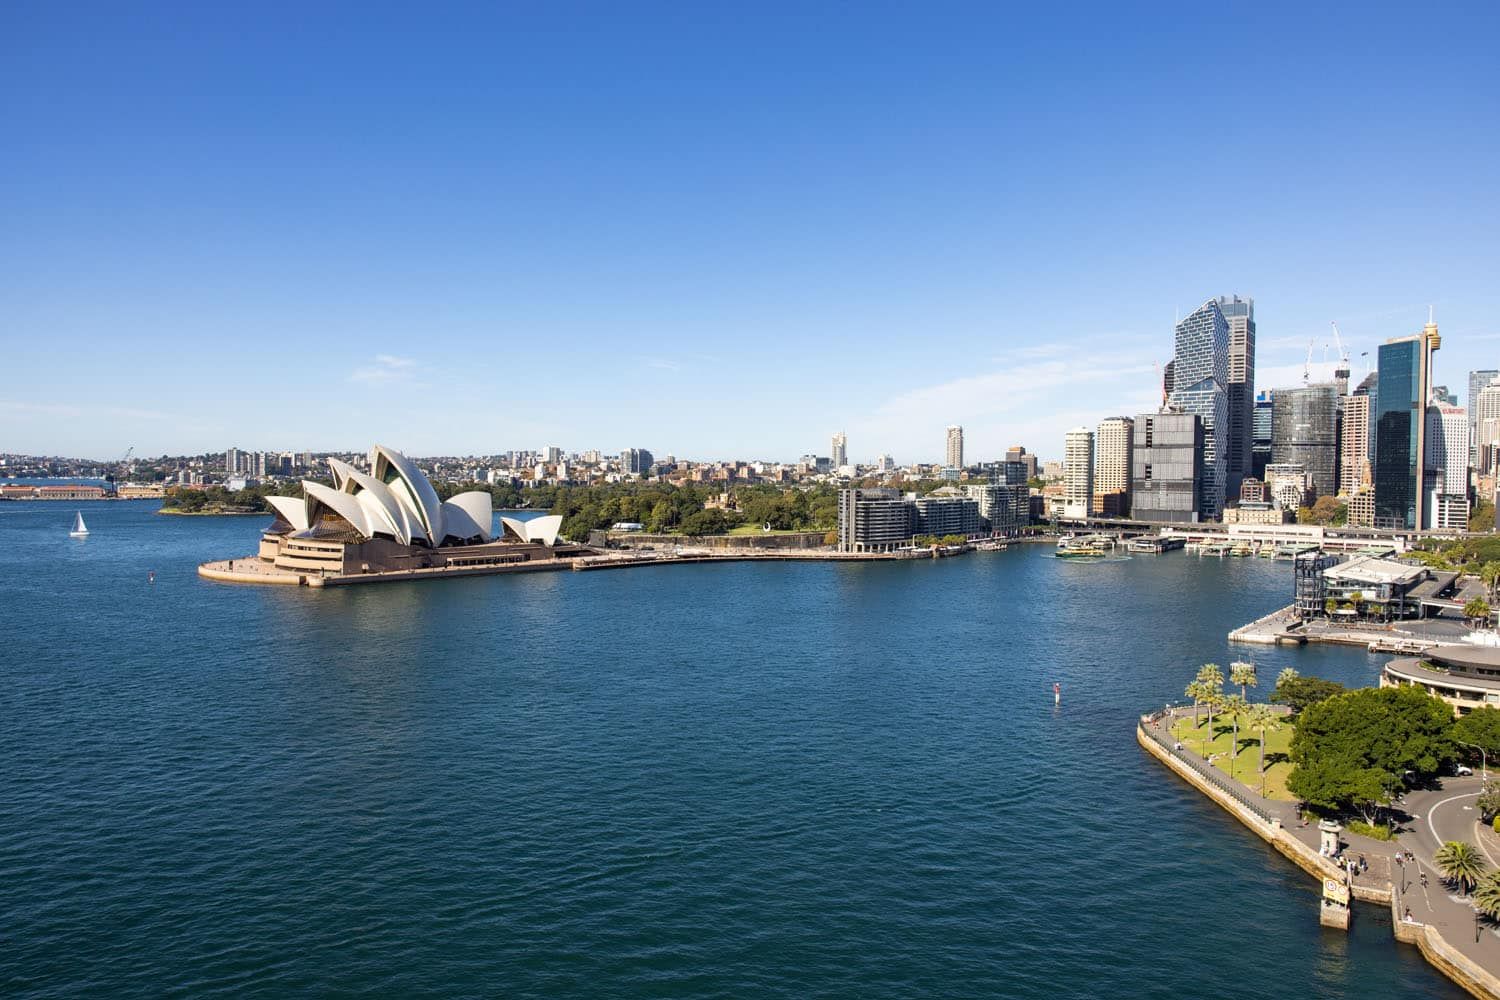 Sydney Harbour Bridge View | Best Views of Sydney